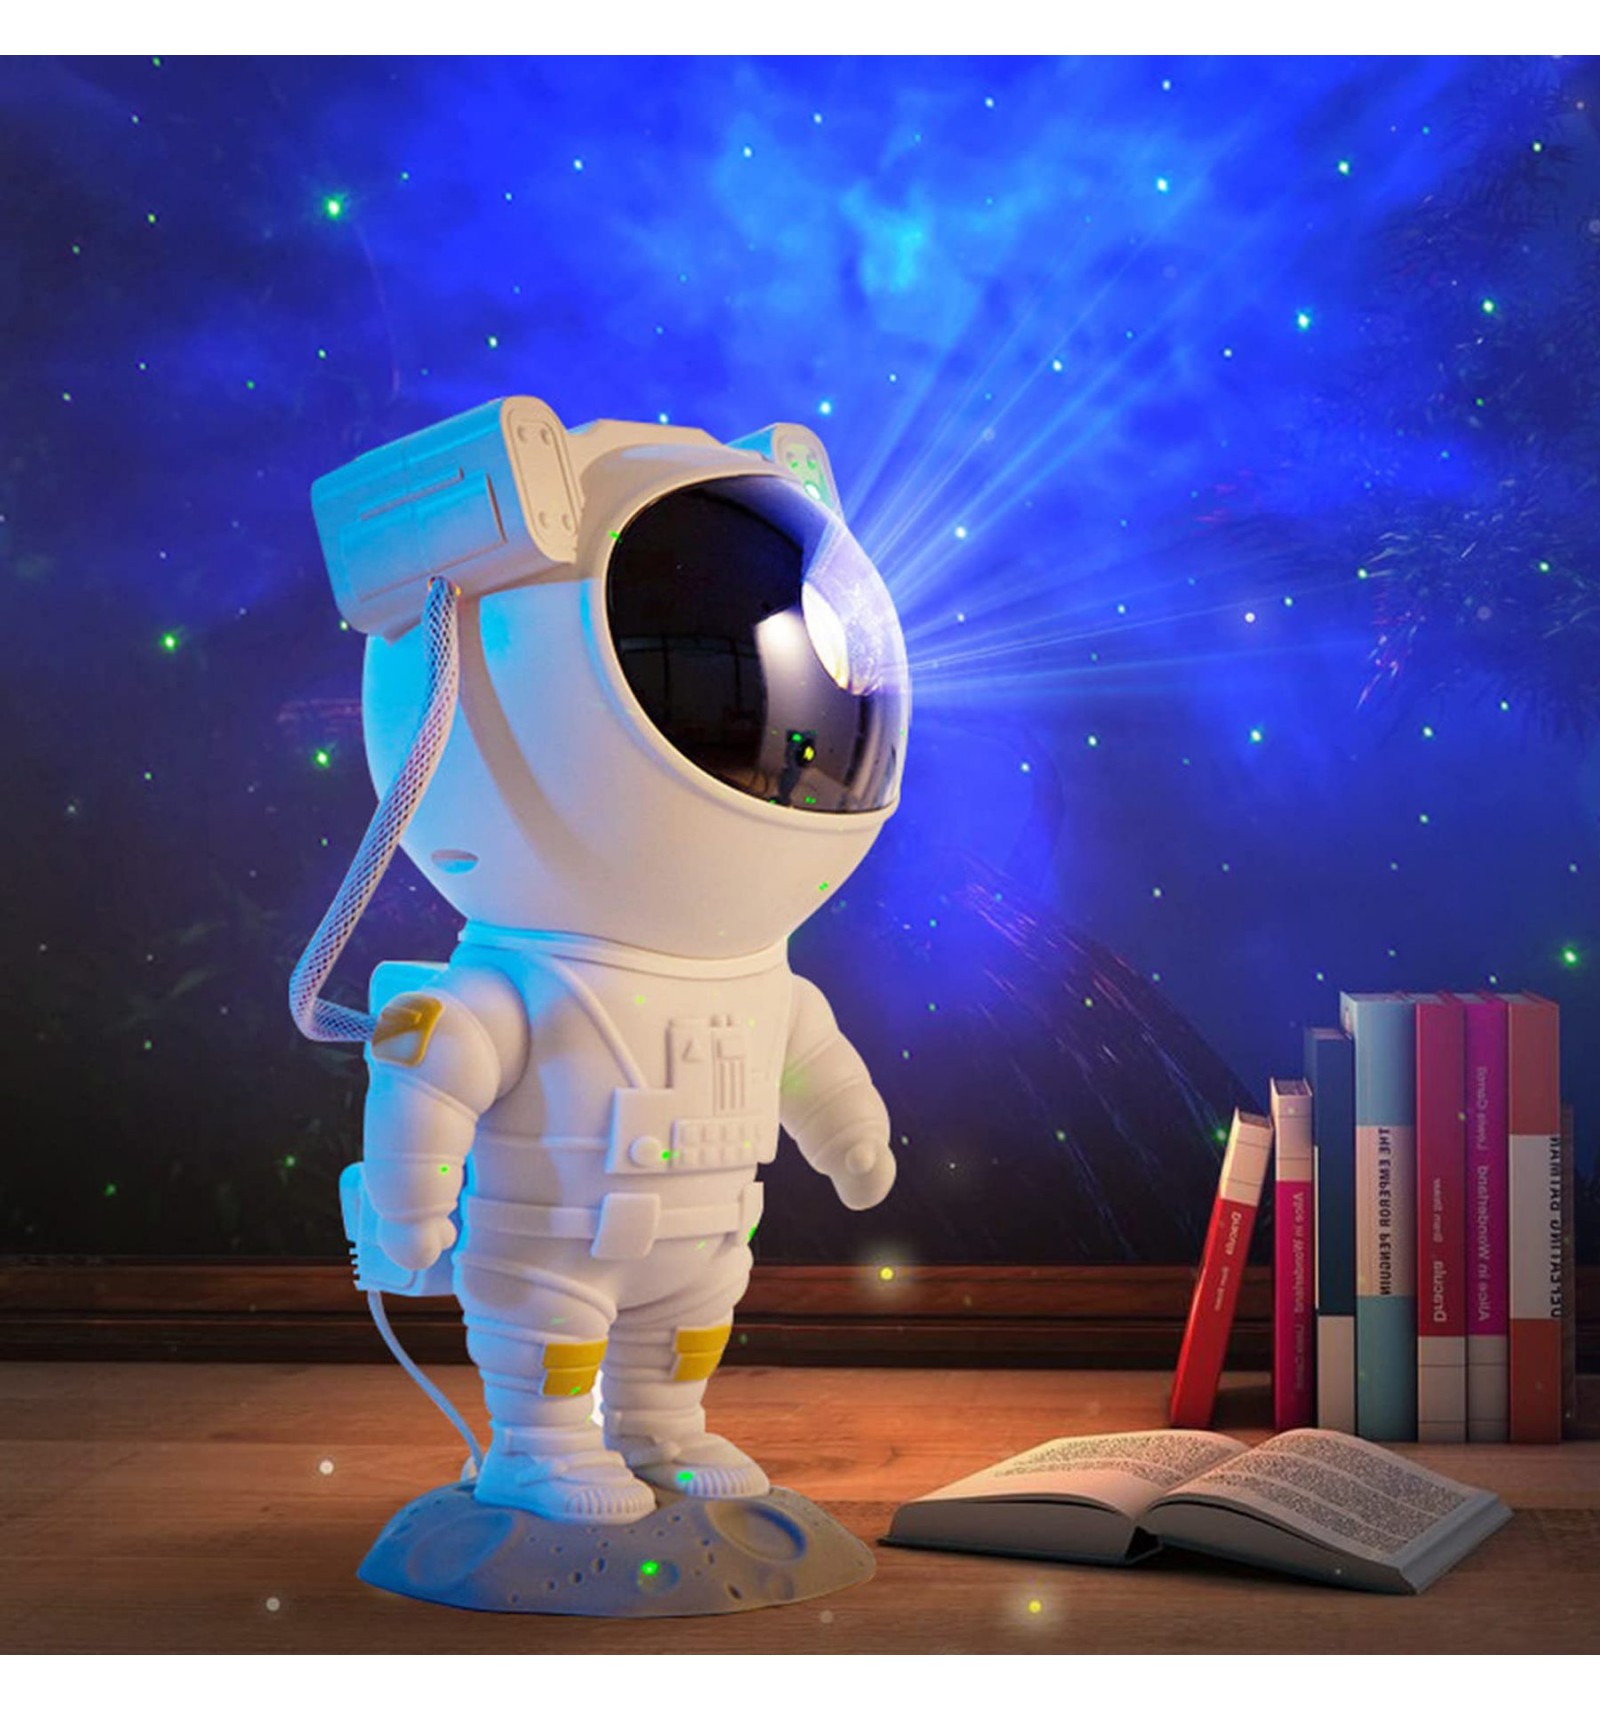 Proyector de luz Astronaut Galaxy, proyector de estrellas, luz